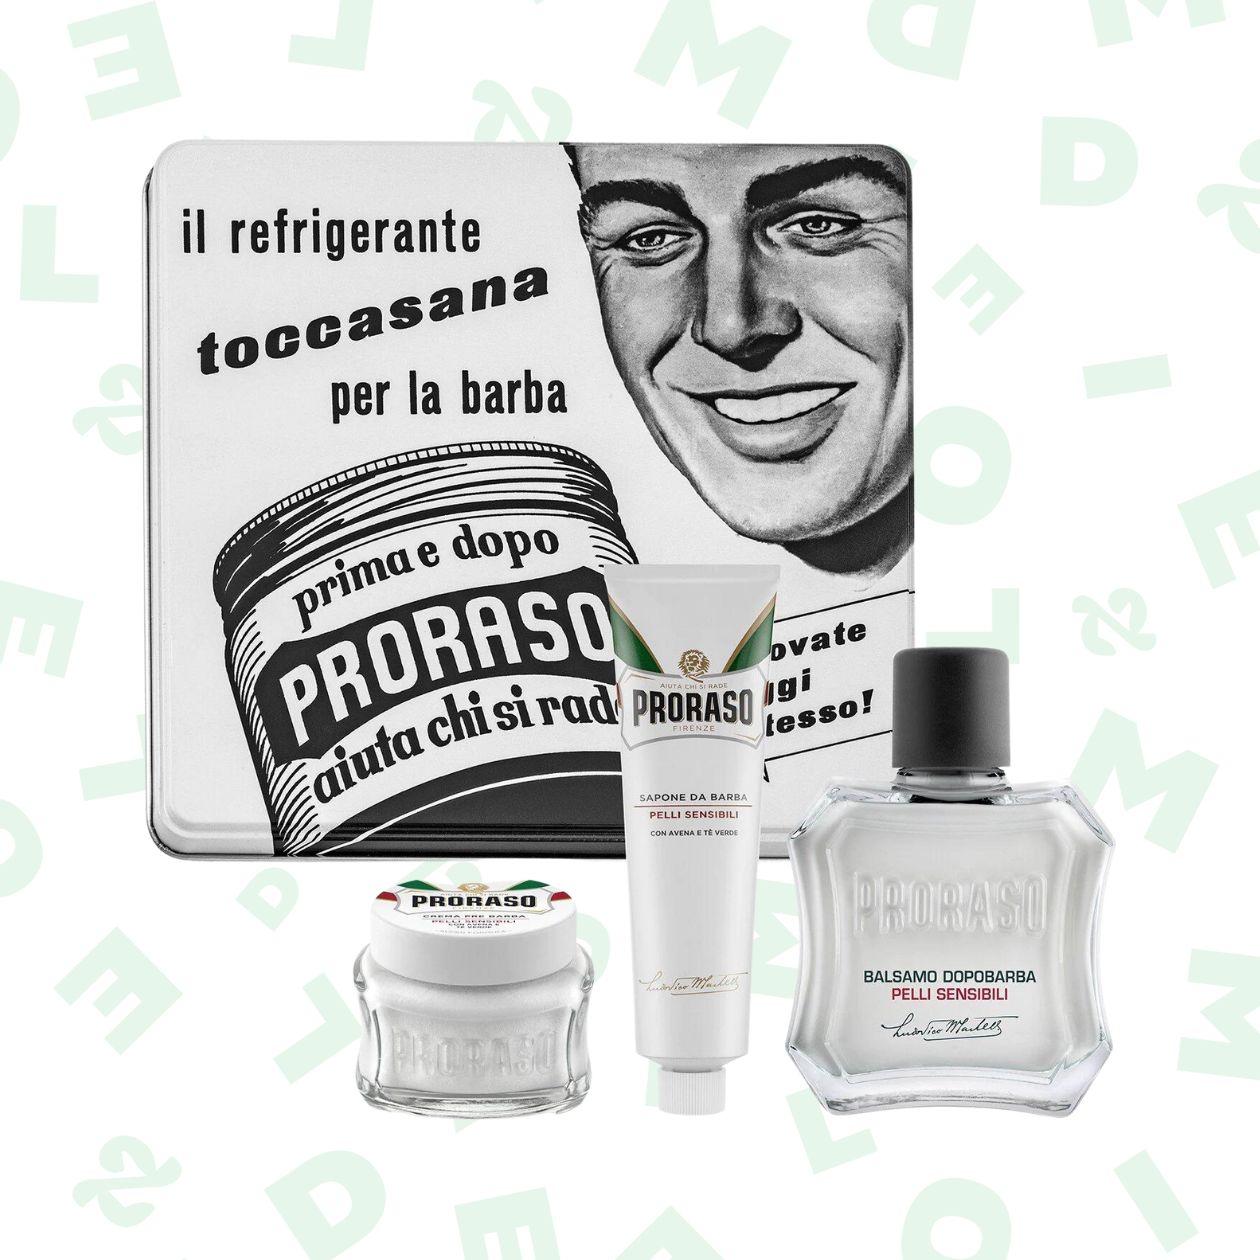 Coffret de rasage vintage pour peaux sensibles (crème avant-rasage, crème à raser et baume après-rasage) — Proraso — 18,75€.